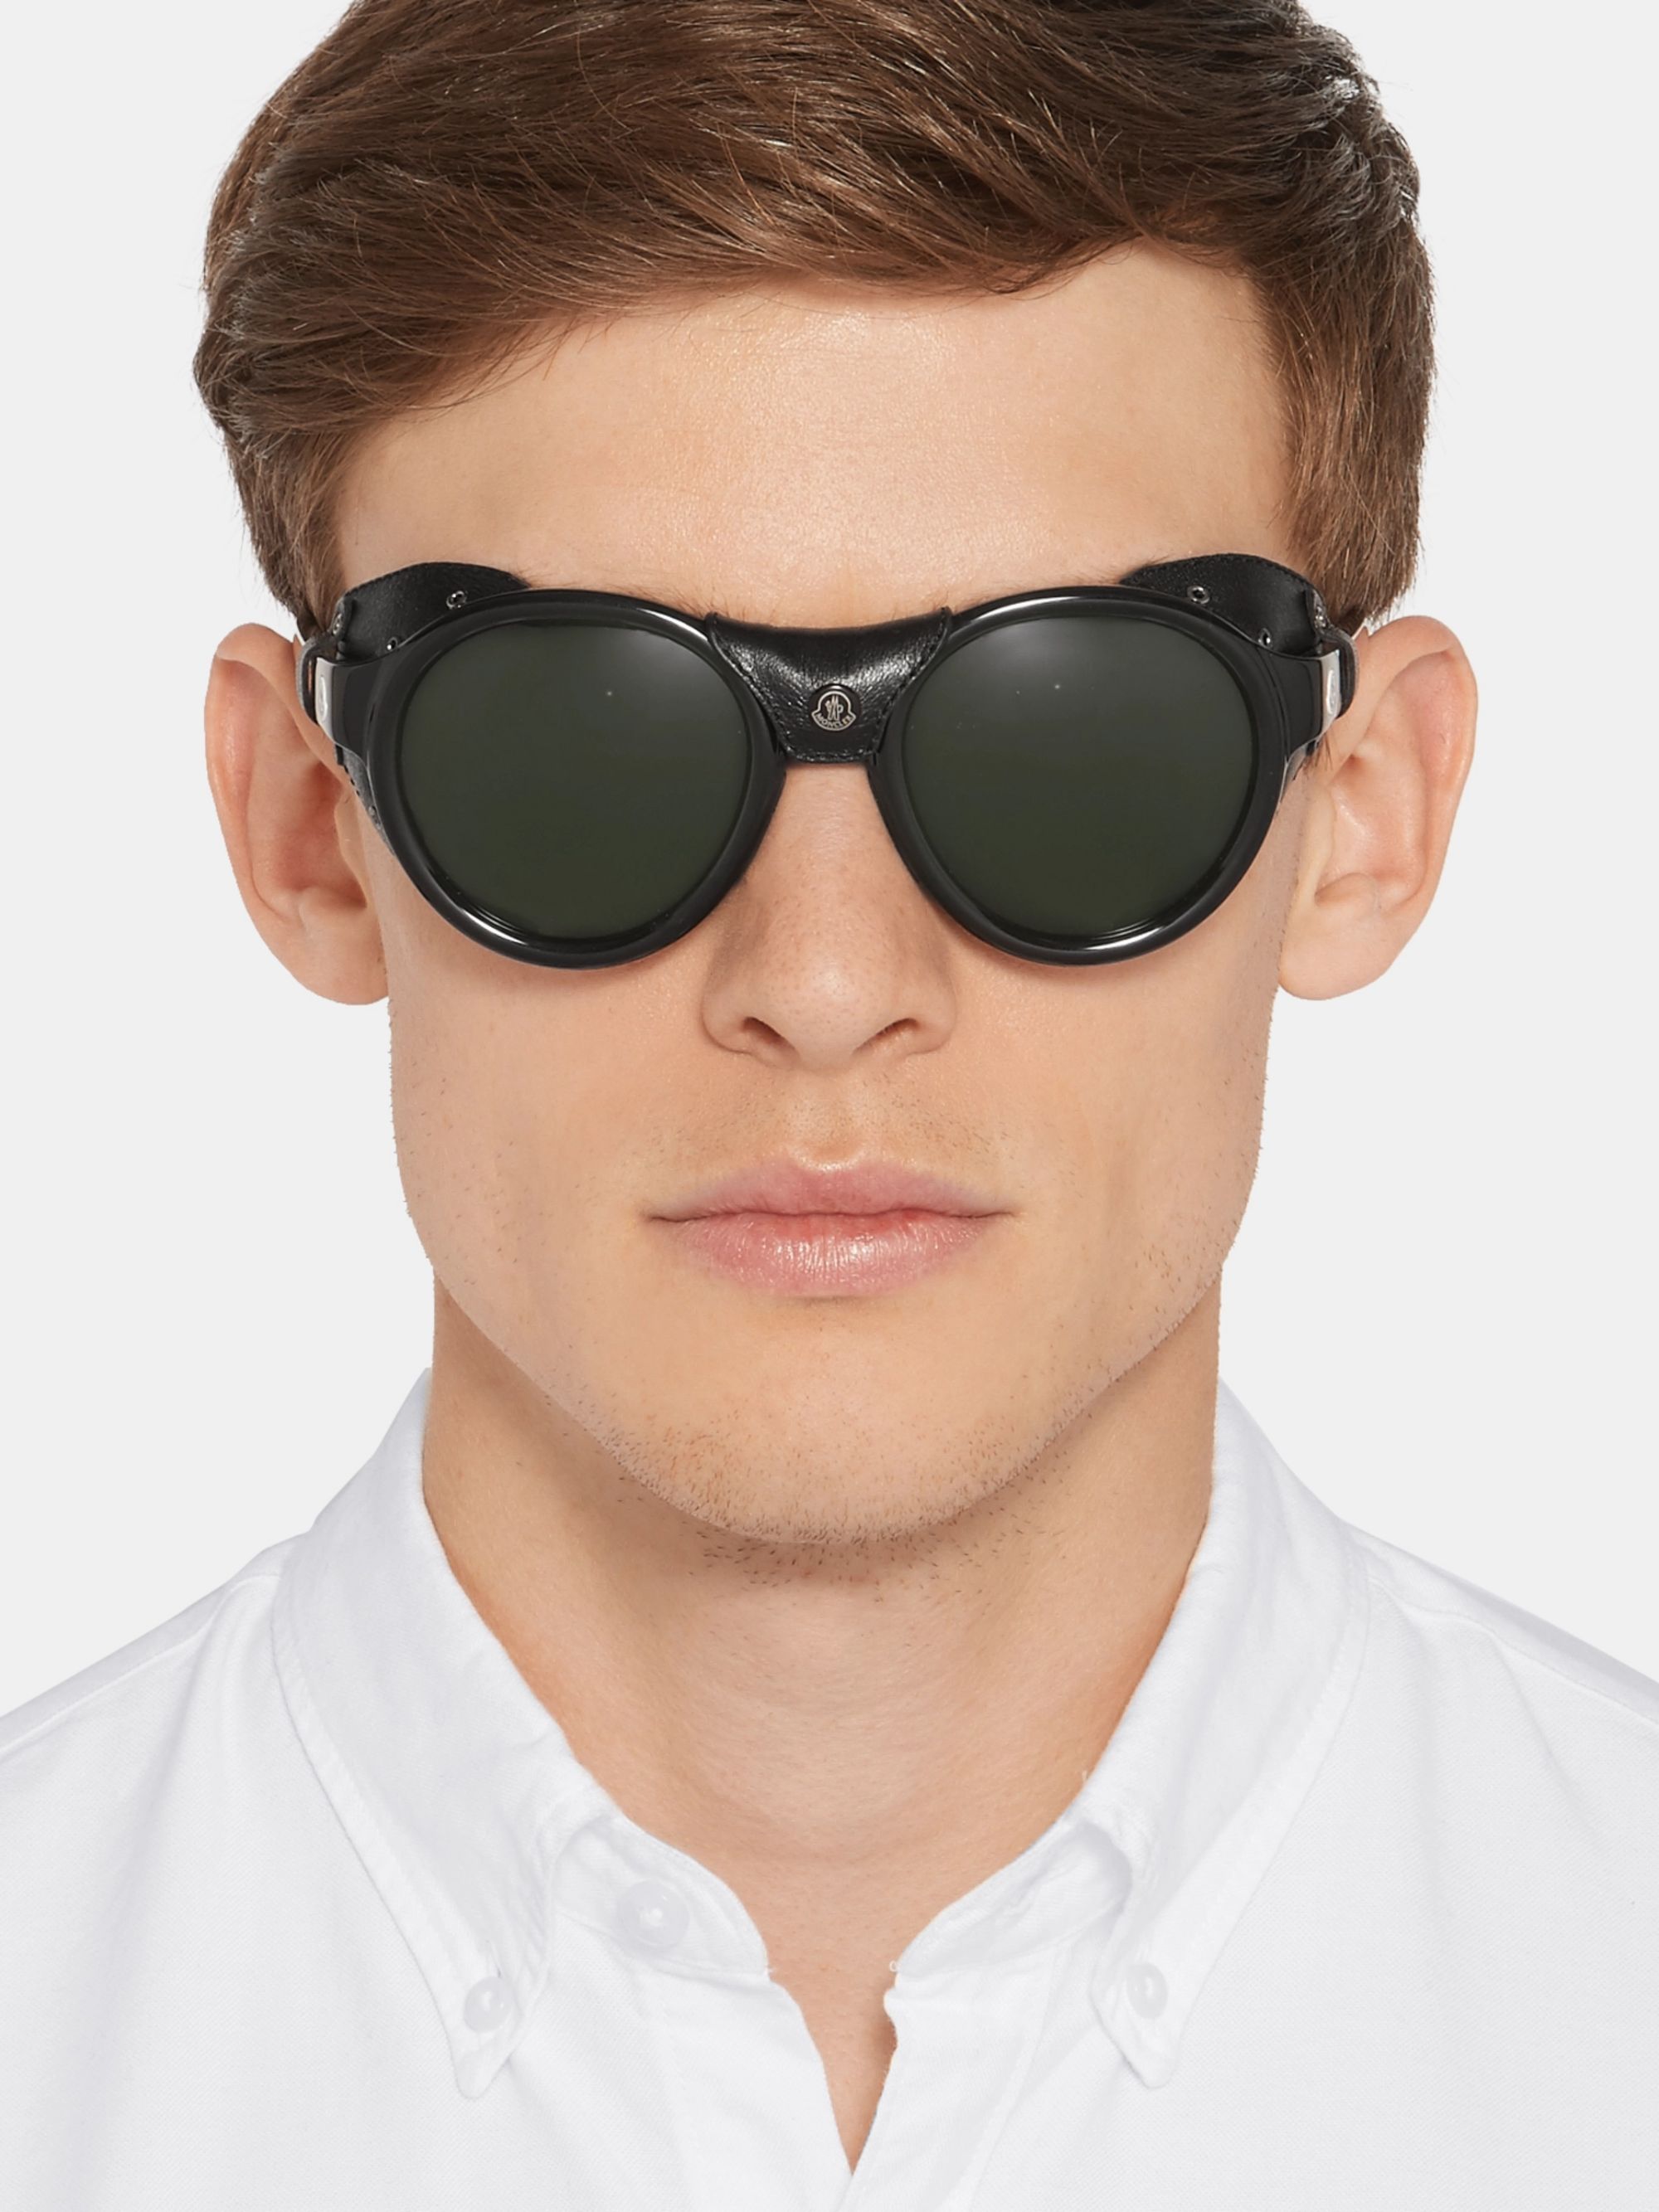 Очки мужские новосибирск. Очки солнцезащитные мужские. Солнечные очки для мужчин. Стильные мужские очки. Очки мужские солнцезащитные модные.